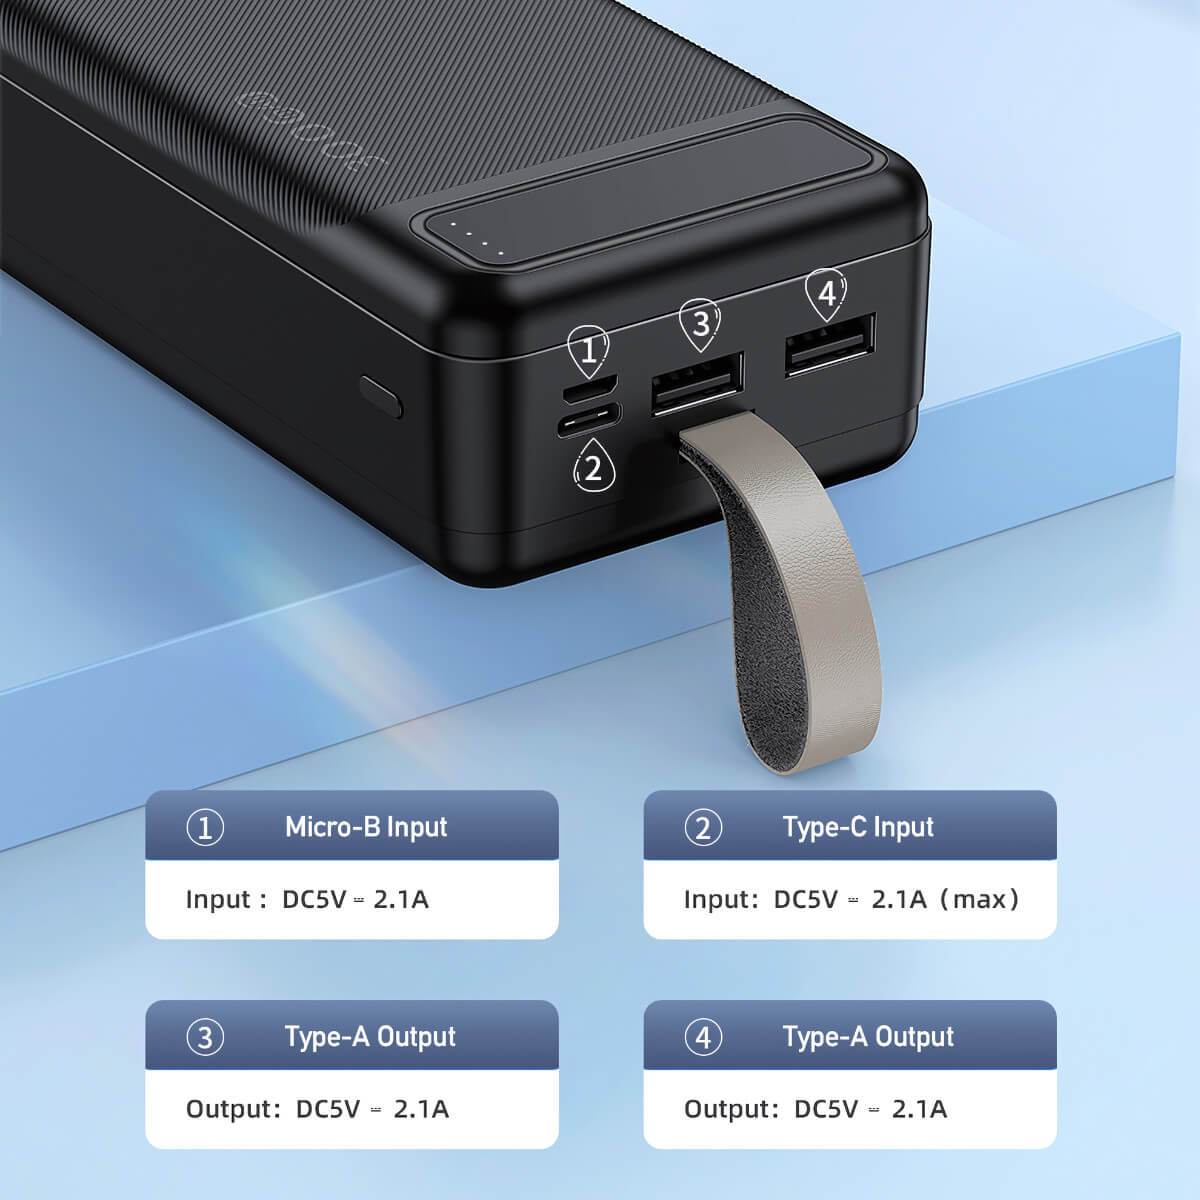 AWEI P7K 30000mah Dual USB Power Bank - Hugmie